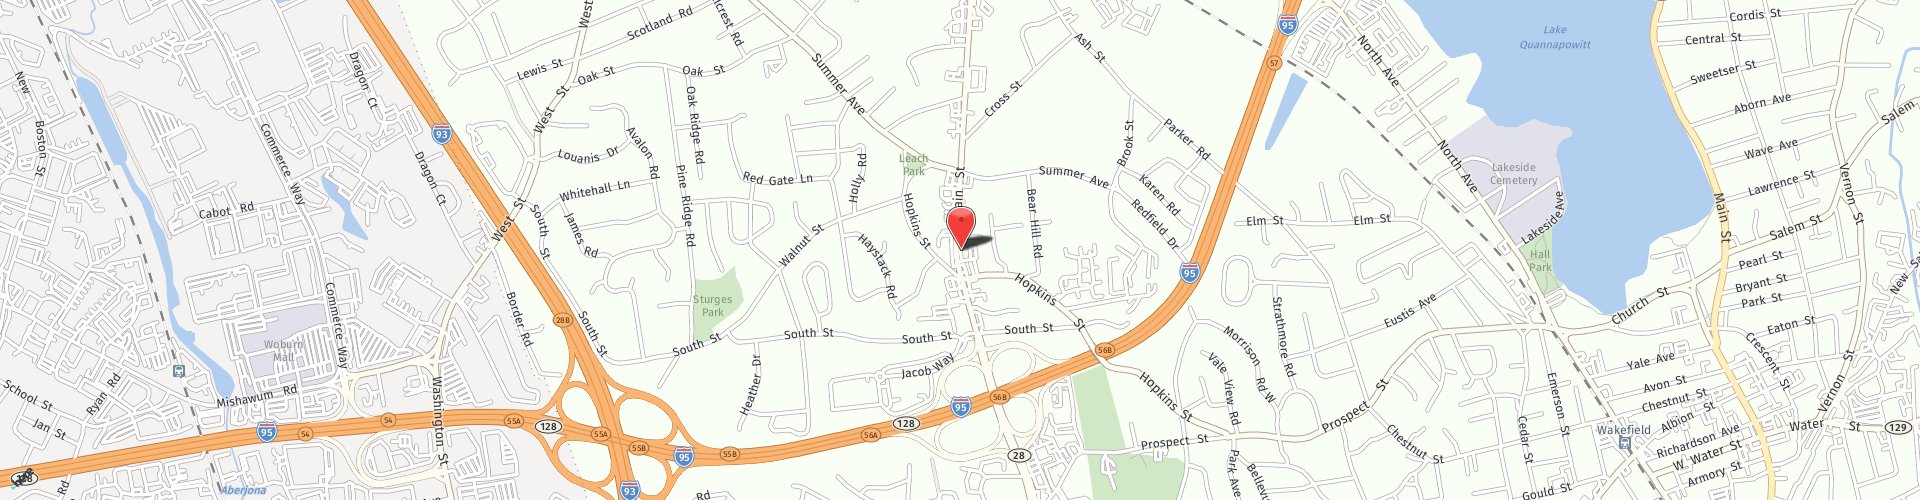 Location Map: 131 Main Street Reading, MA 01867